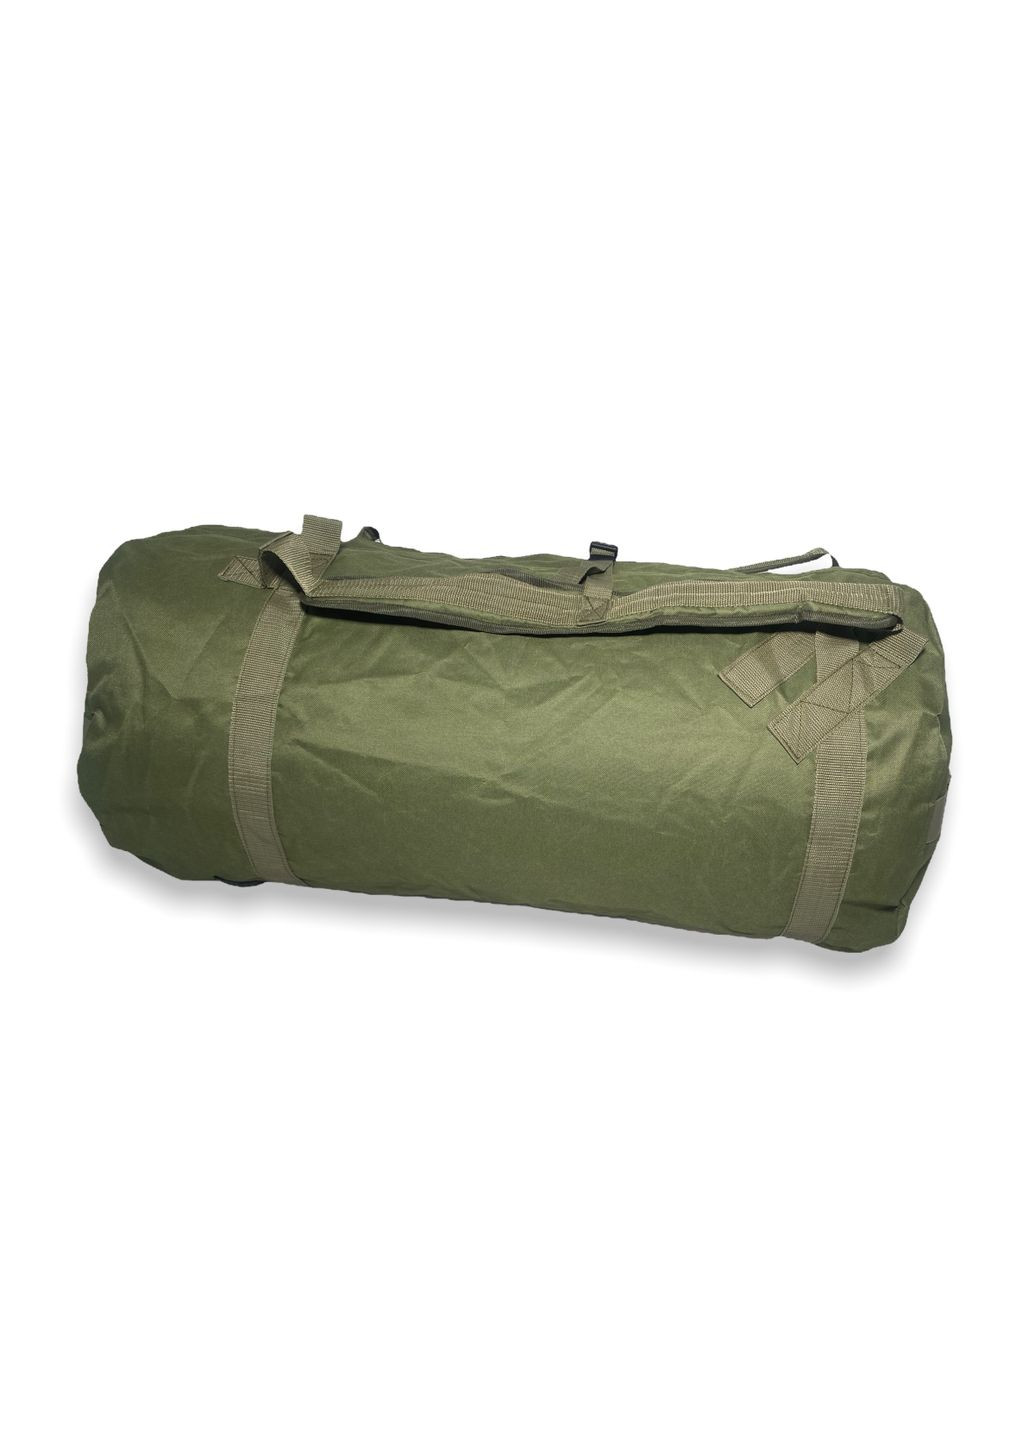 Сумкабаул дорожня рюкзак одне велике відділення 2 внутрішні кишені розміри 80*40*40 см хакі BagWay (285815057)